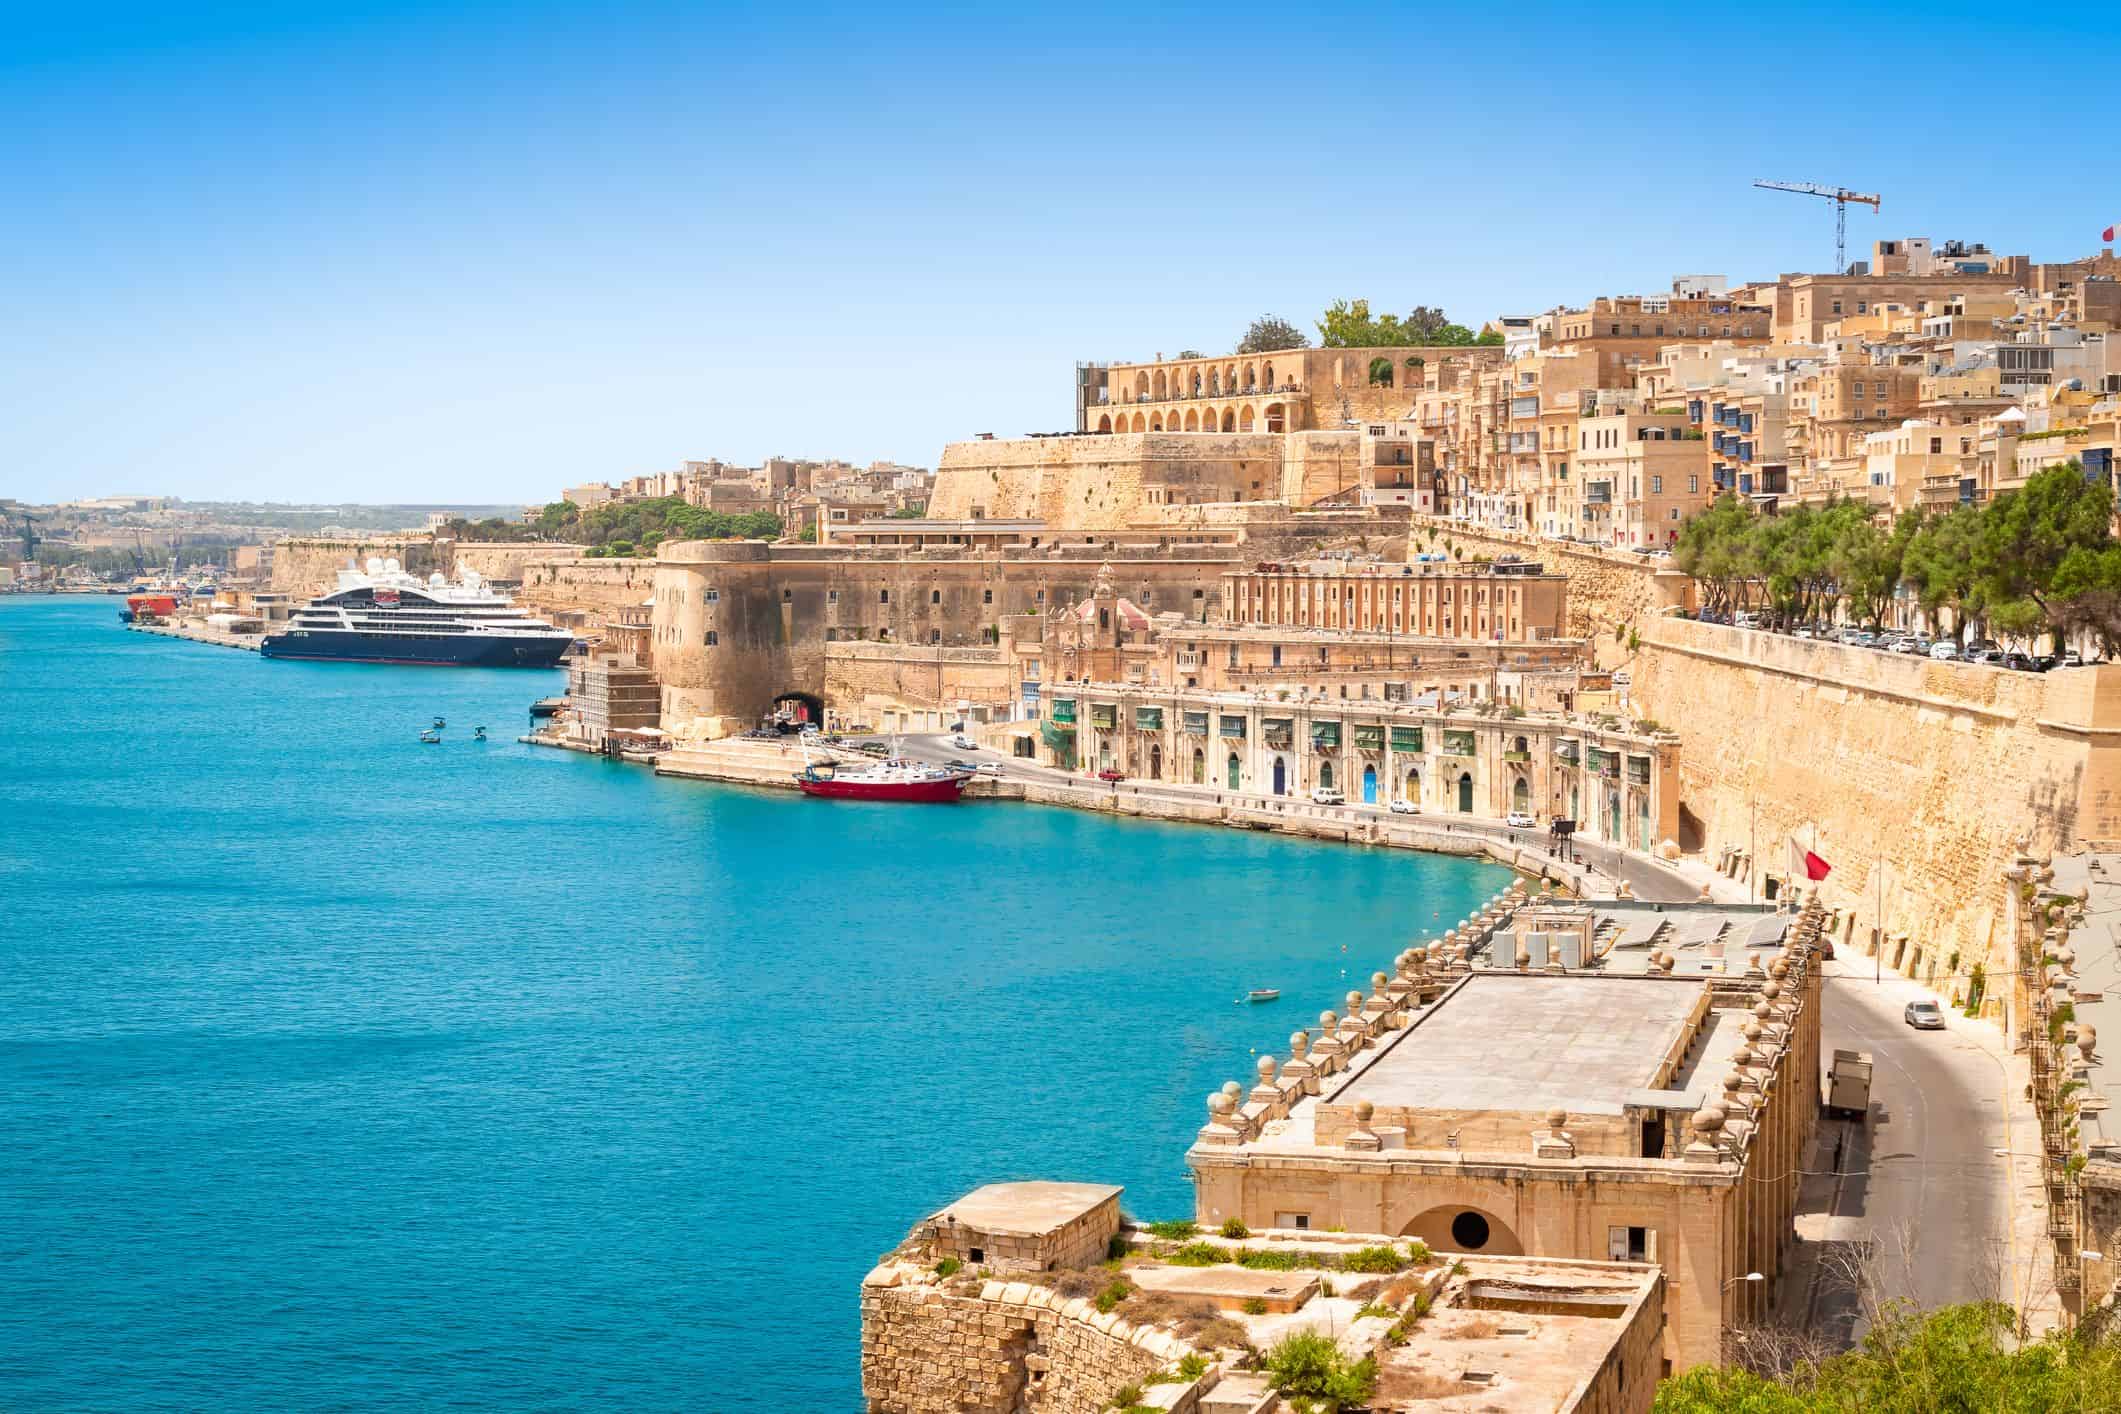  Những lợi ích về định cư tại một quốc gia an ninh và ổn định như Malta